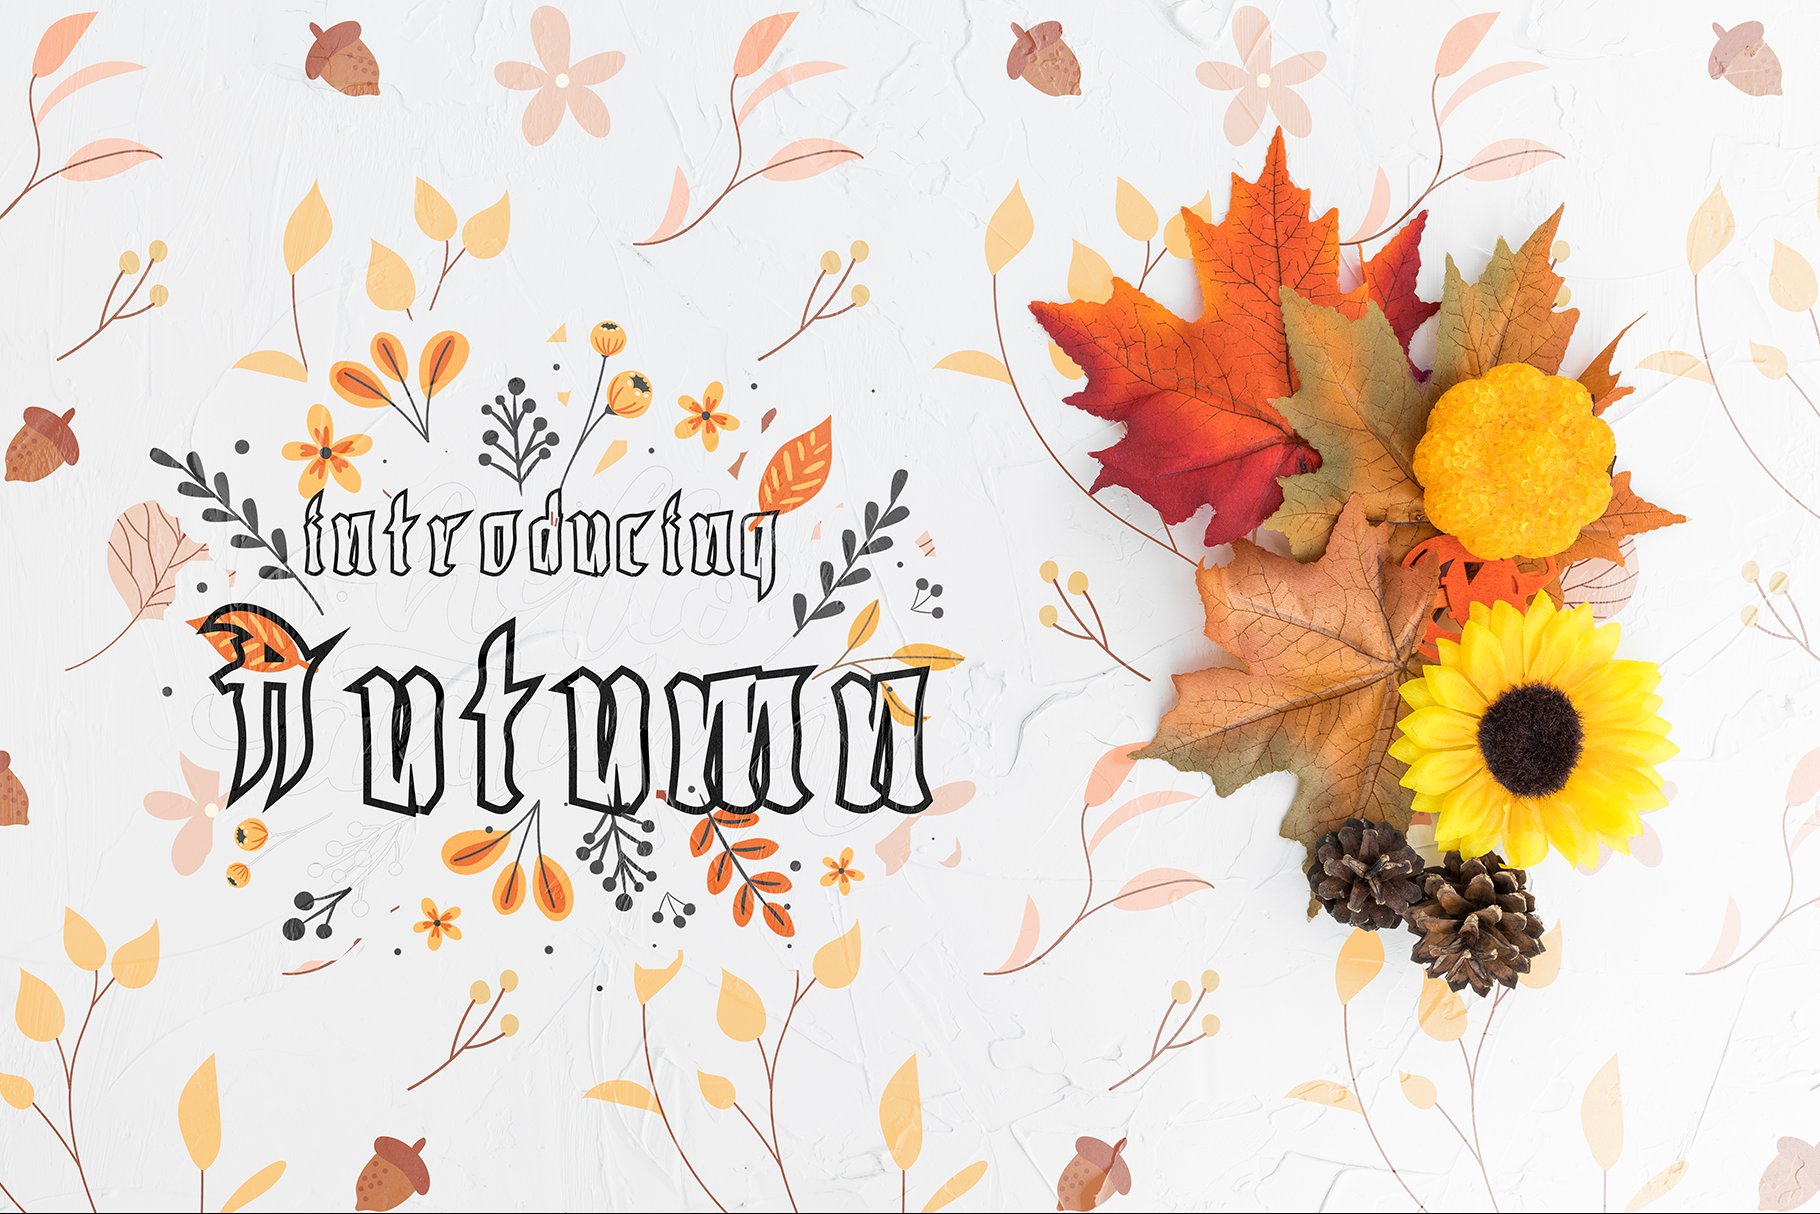 Autumn | Fall cover image.